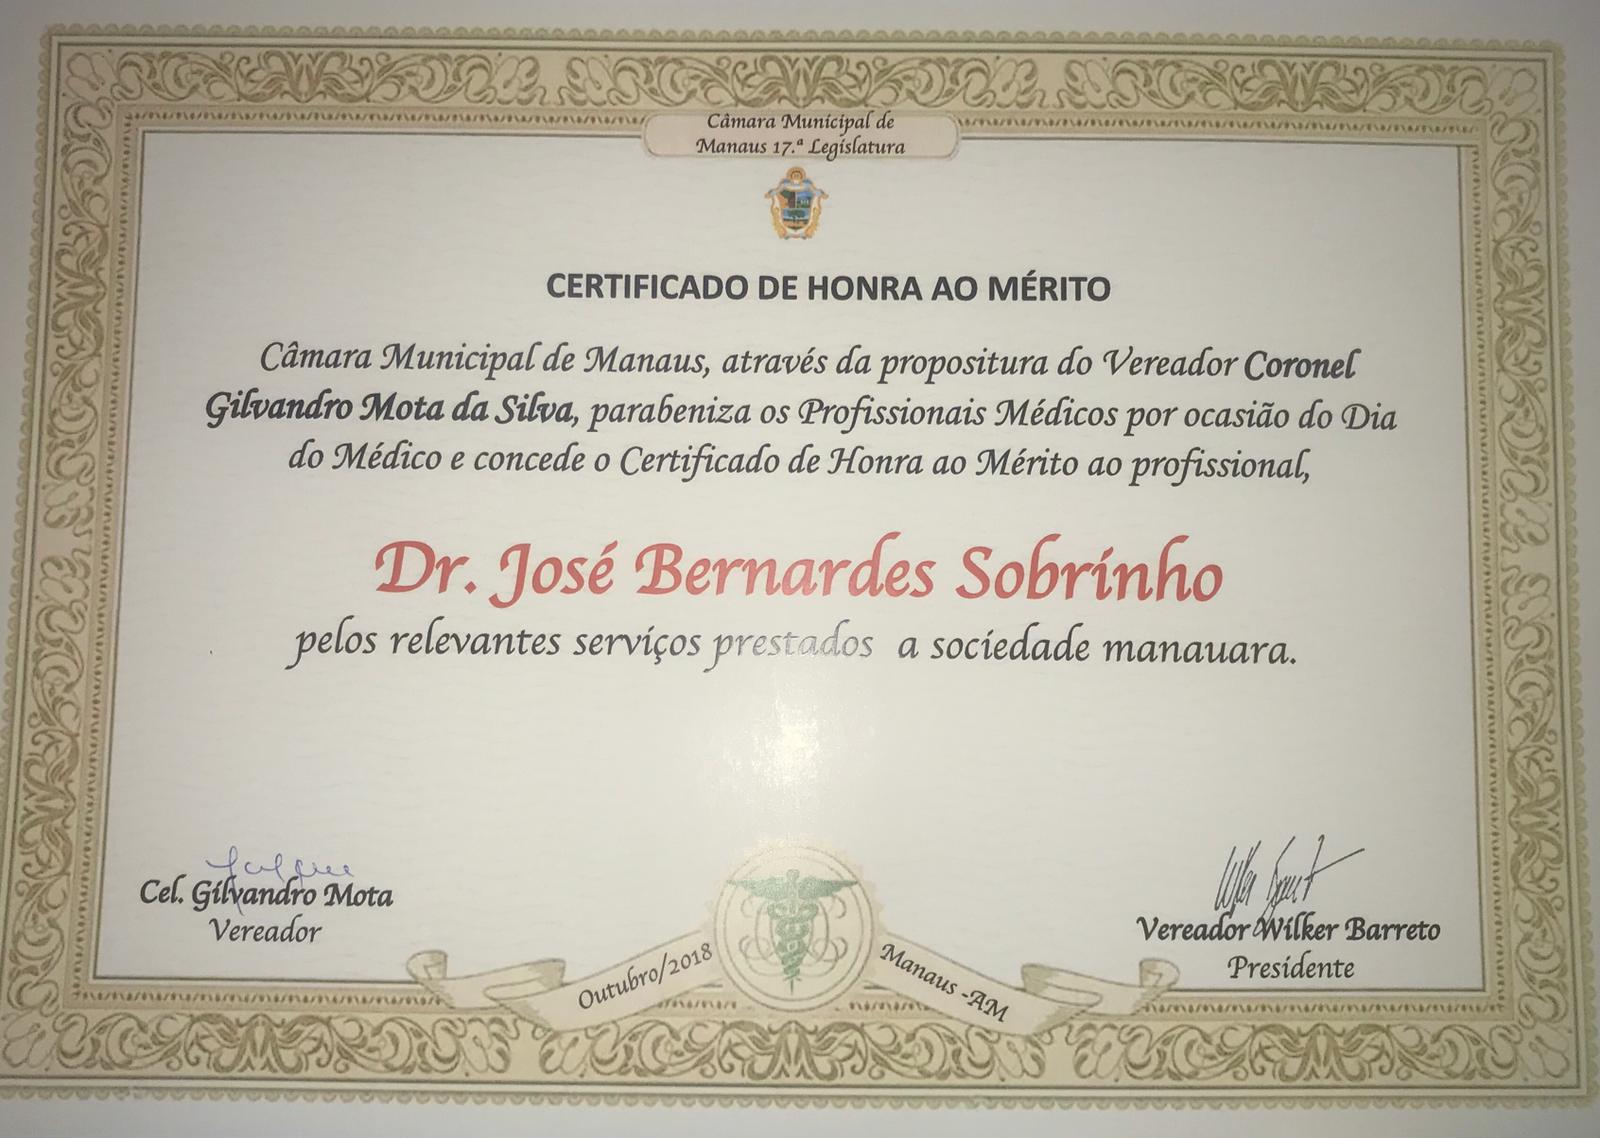 Certificado em homenagem ao Dr. José Bernardes Sobrinho